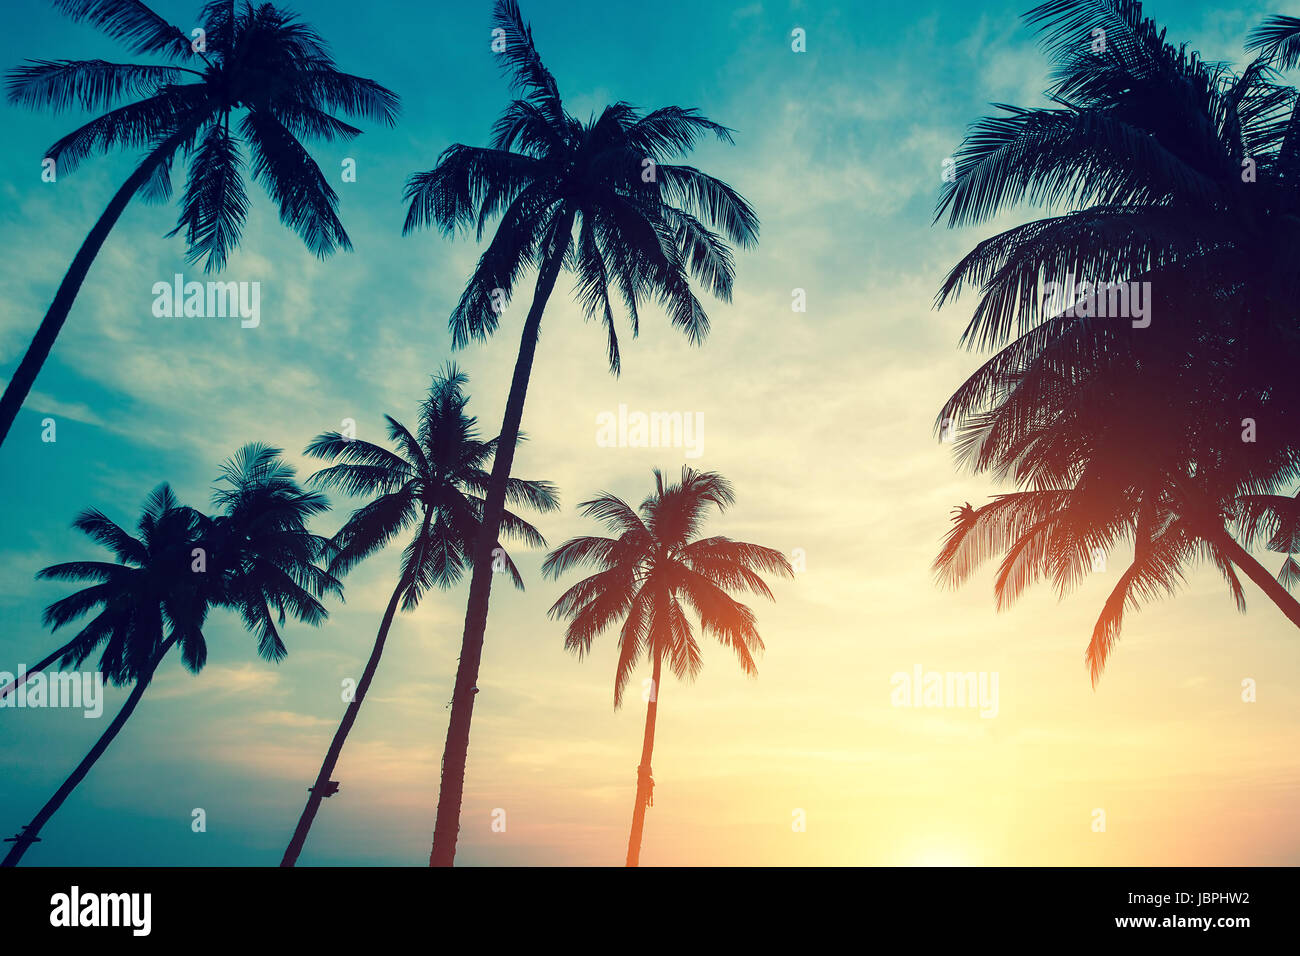 Silhouettes de palmiers tropicaux contre le ciel pendant incroyable coucher du soleil. Banque D'Images